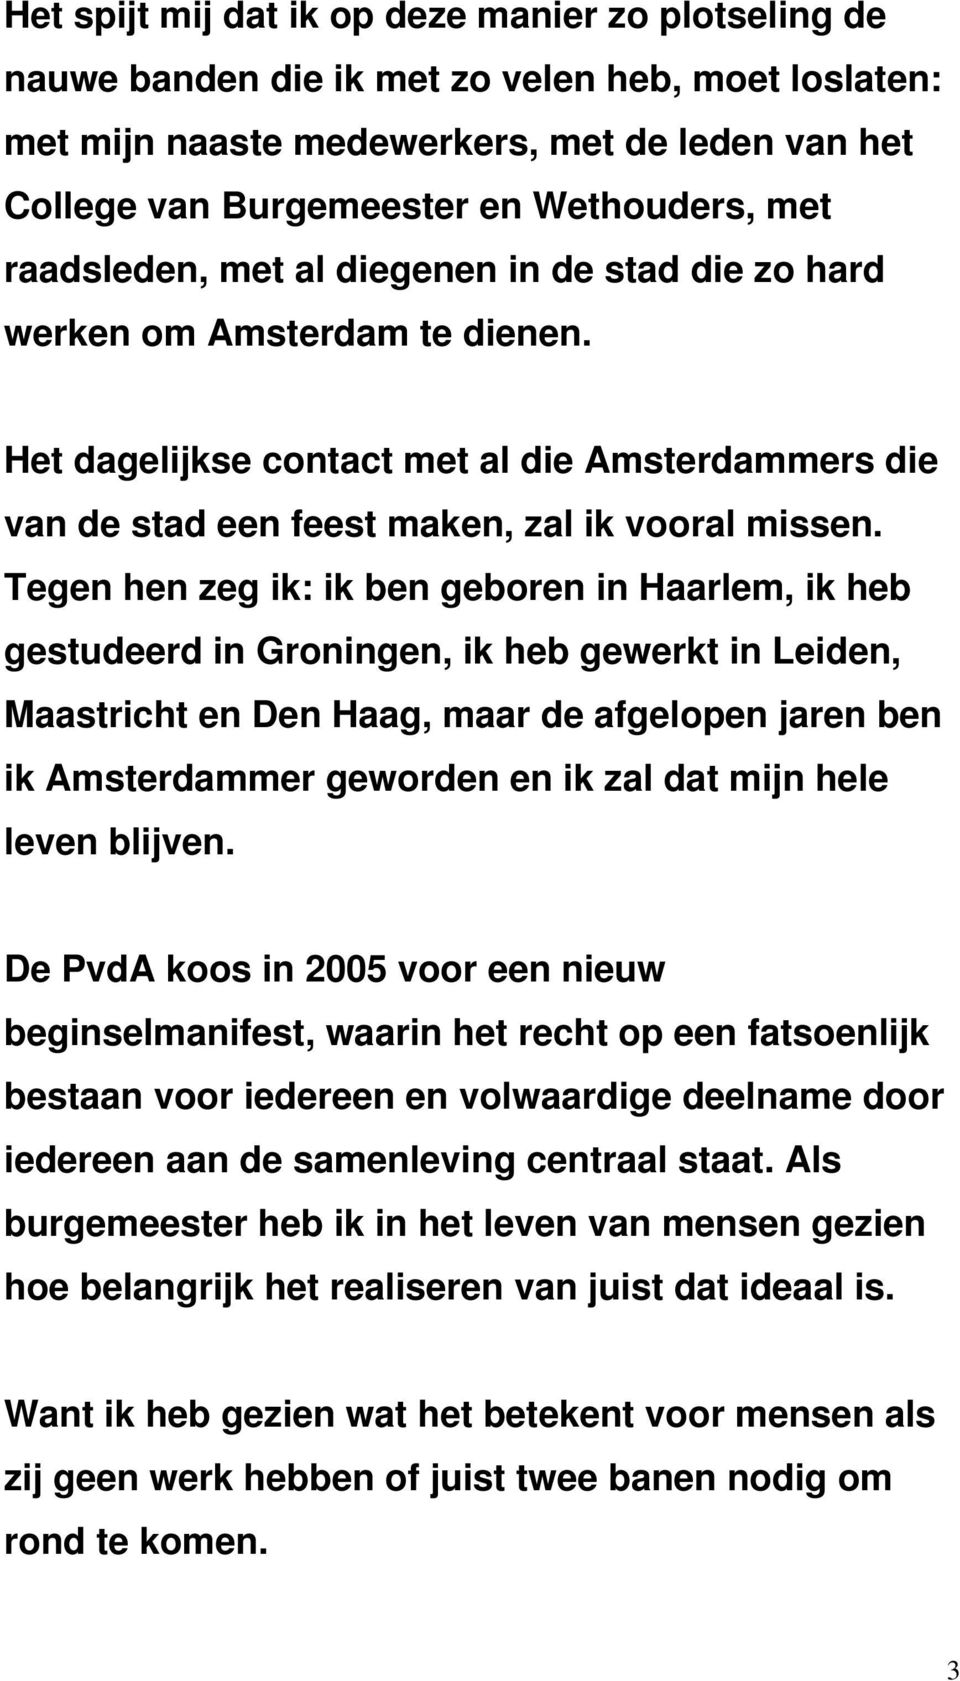 Tegen hen zeg ik: ik ben geboren in Haarlem, ik heb gestudeerd in Groningen, ik heb gewerkt in Leiden, Maastricht en Den Haag, maar de afgelopen jaren ben ik Amsterdammer geworden en ik zal dat mijn